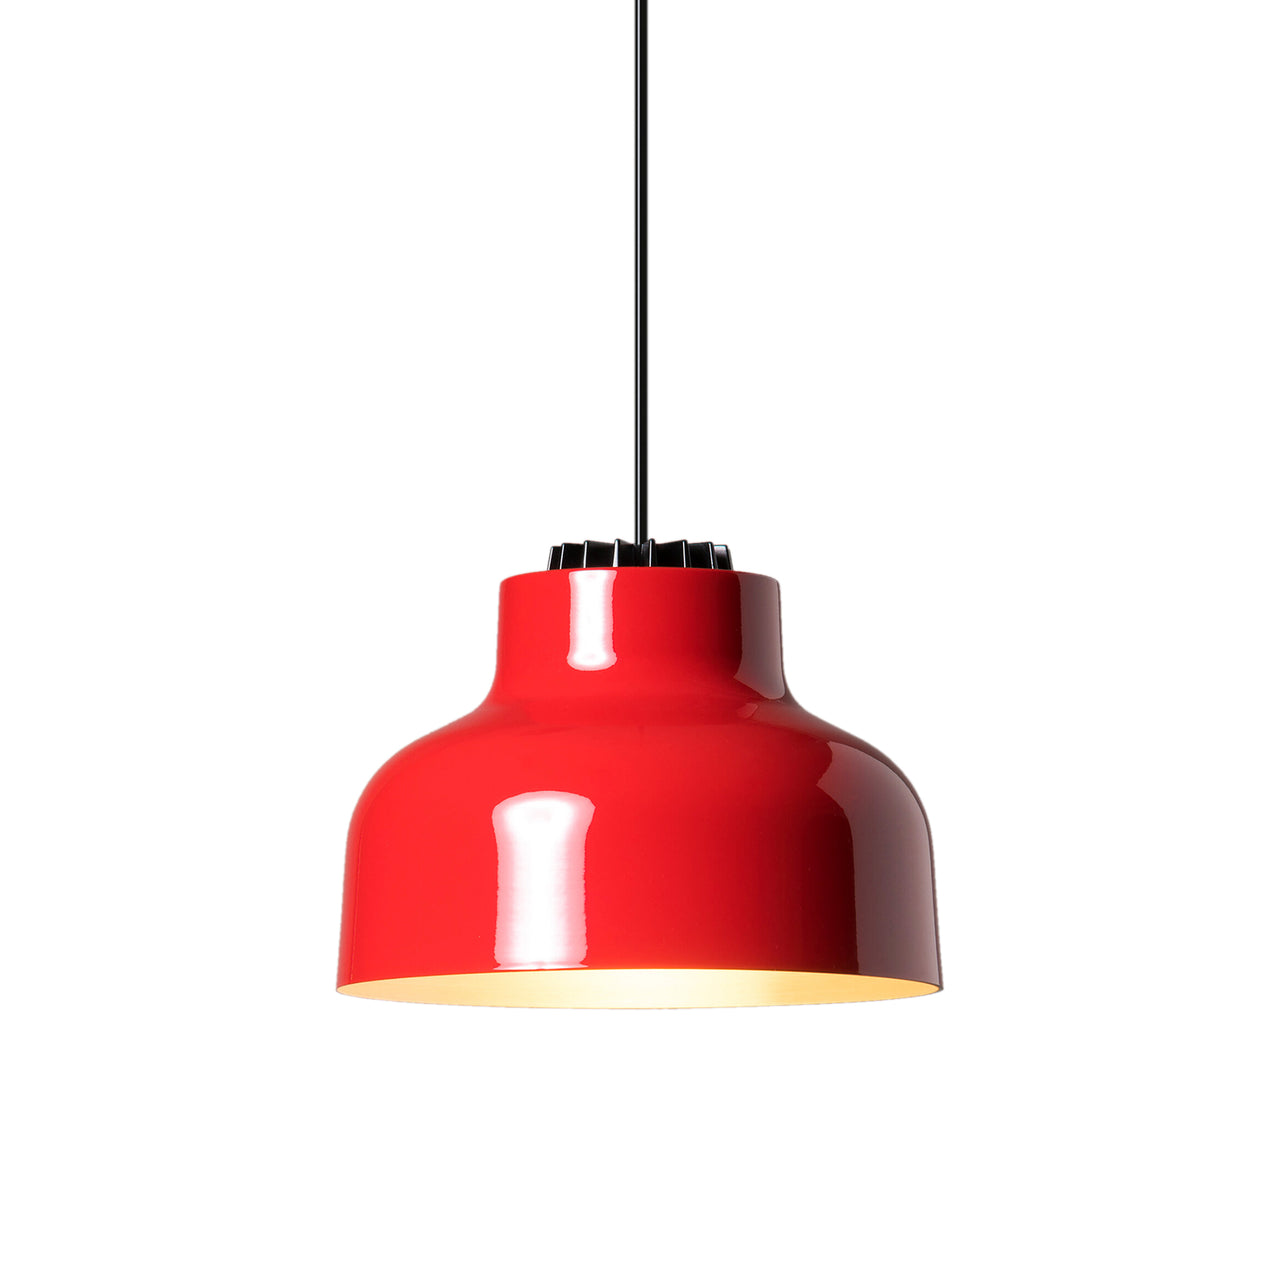 M64 Pendant Lamp: Brilliant Red Aluminum